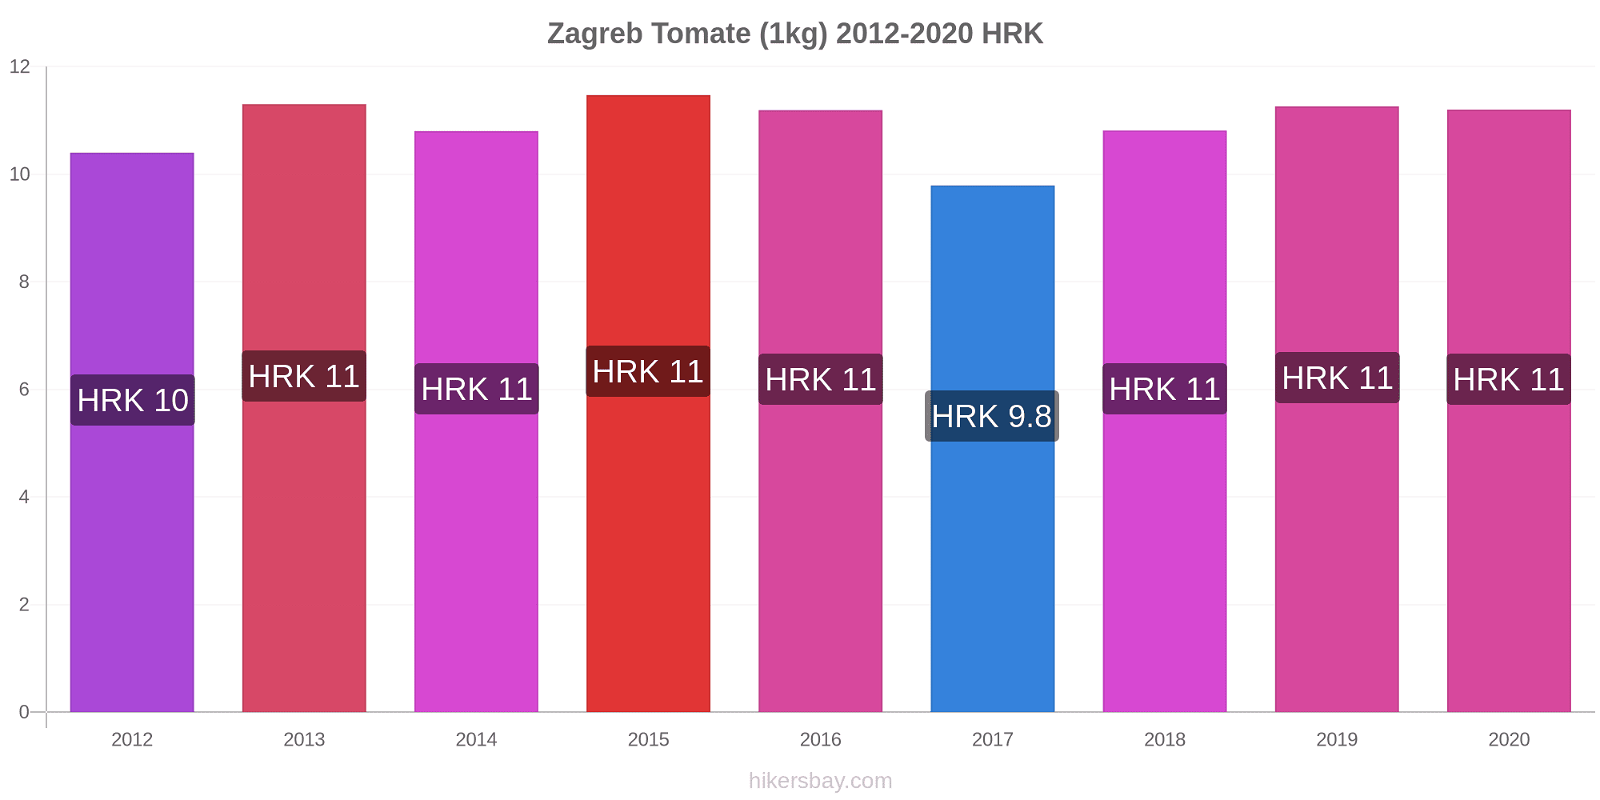 Zagreb cambios de precios Tomate (1kg) hikersbay.com